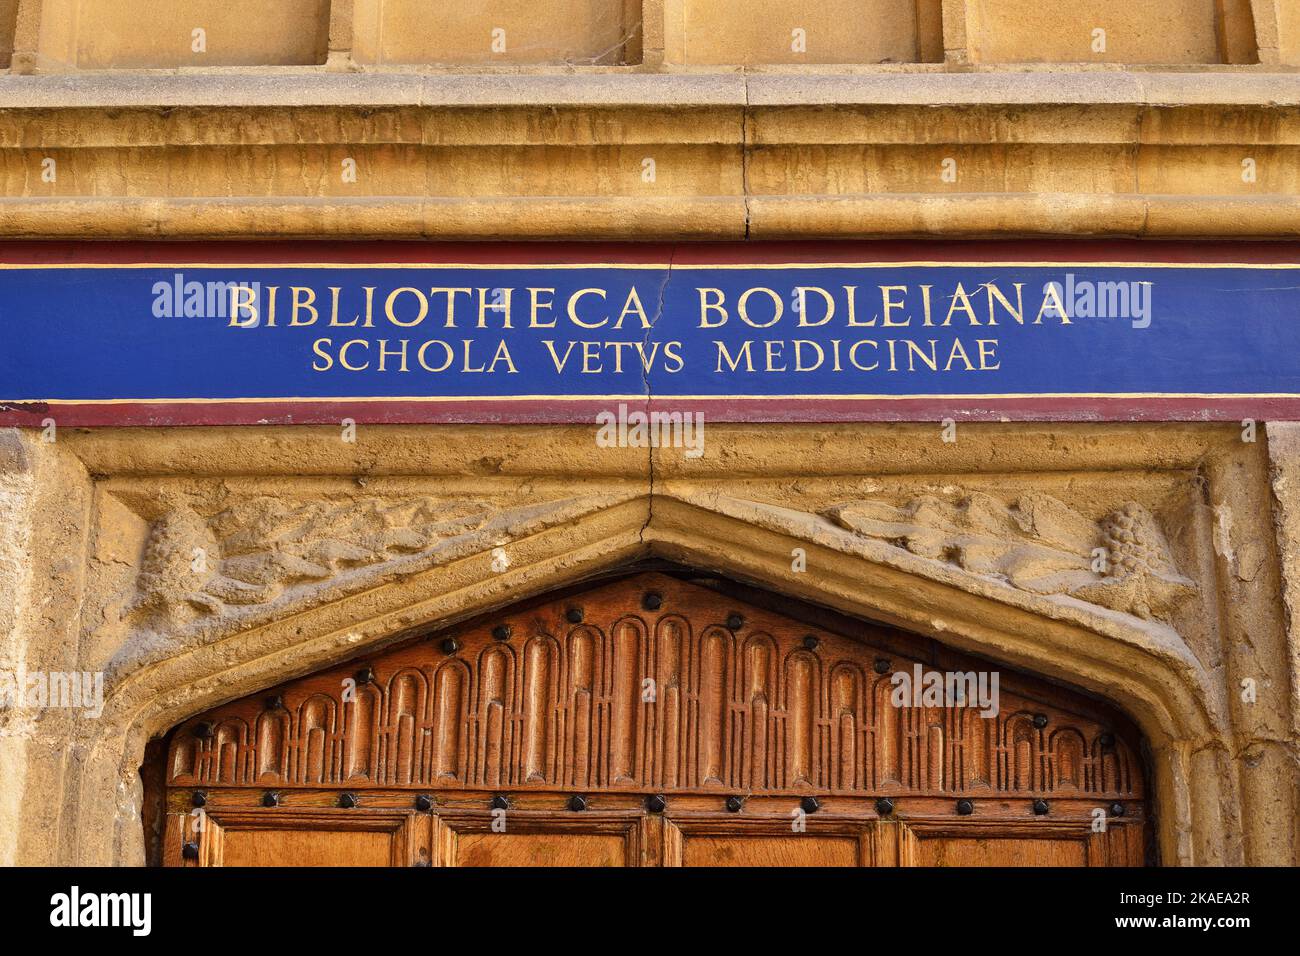 Biblioteca Bodleian, Universidad de Oxford, Reino Unido. Cuadrilátero puerta signo a Schola Vetvs Medicinae, la antigua escuela de medicina. Foto de stock